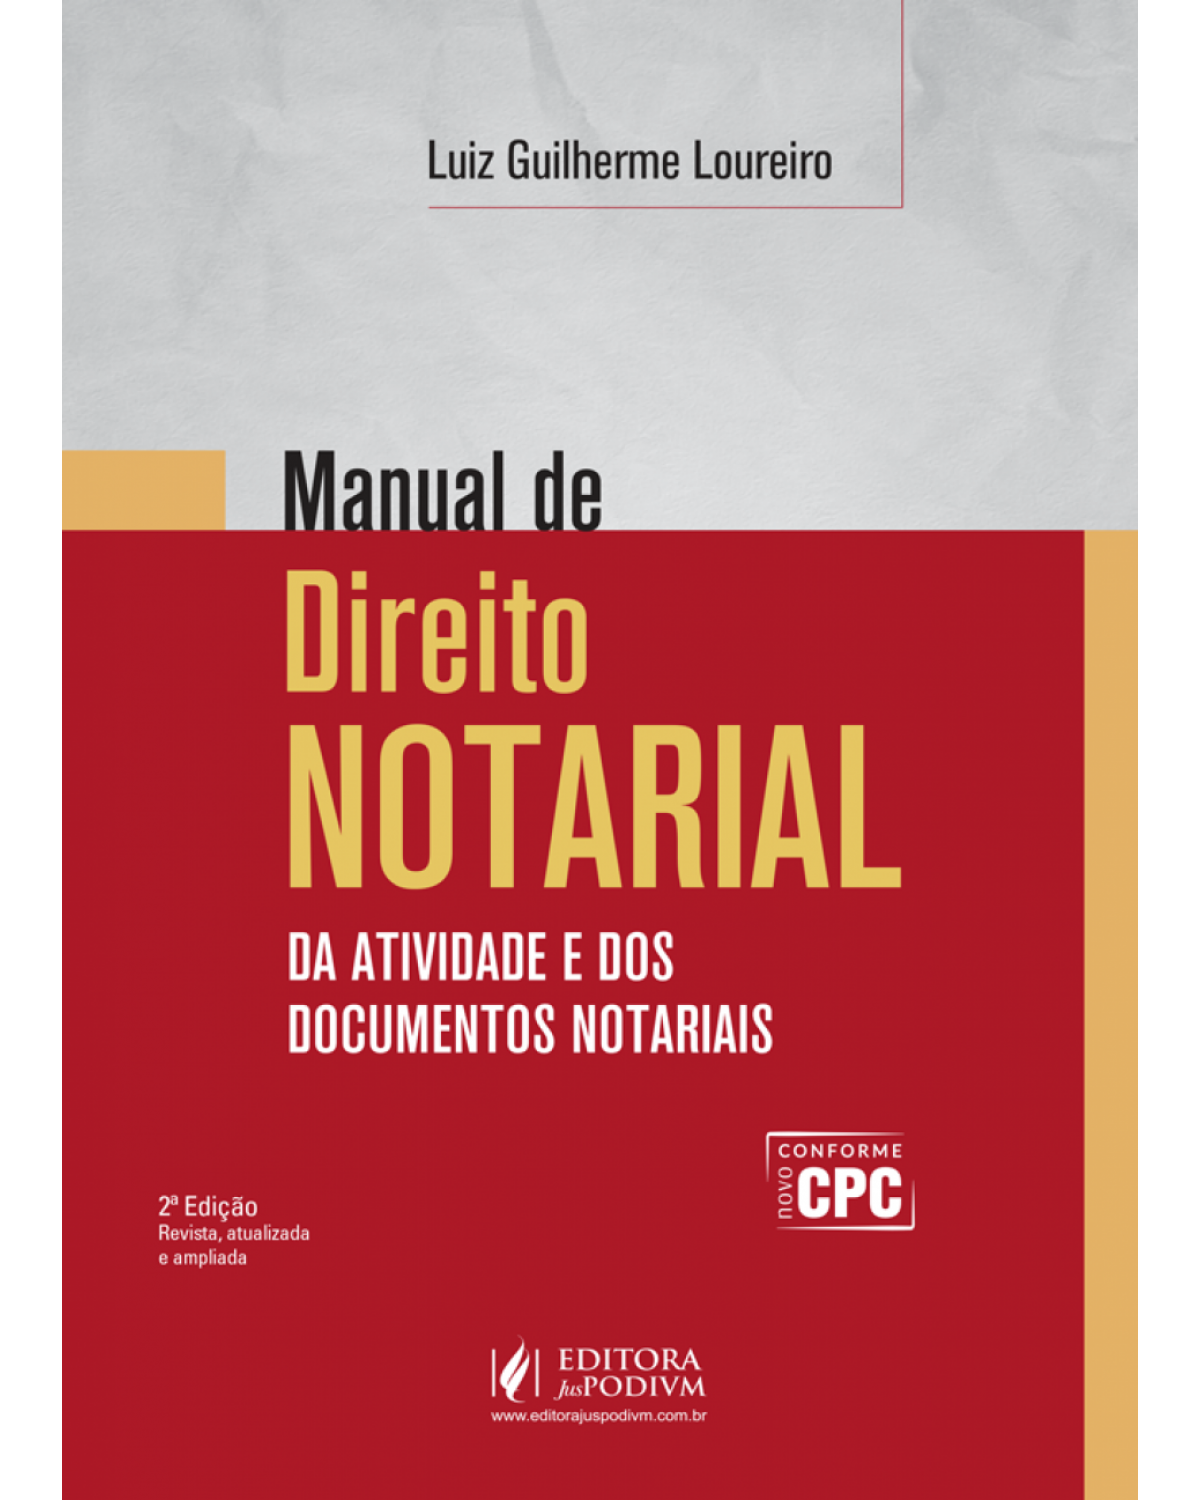 Manual de direito notarial - Da atividade e dos documentos notariais - 2ª Edição | 2017